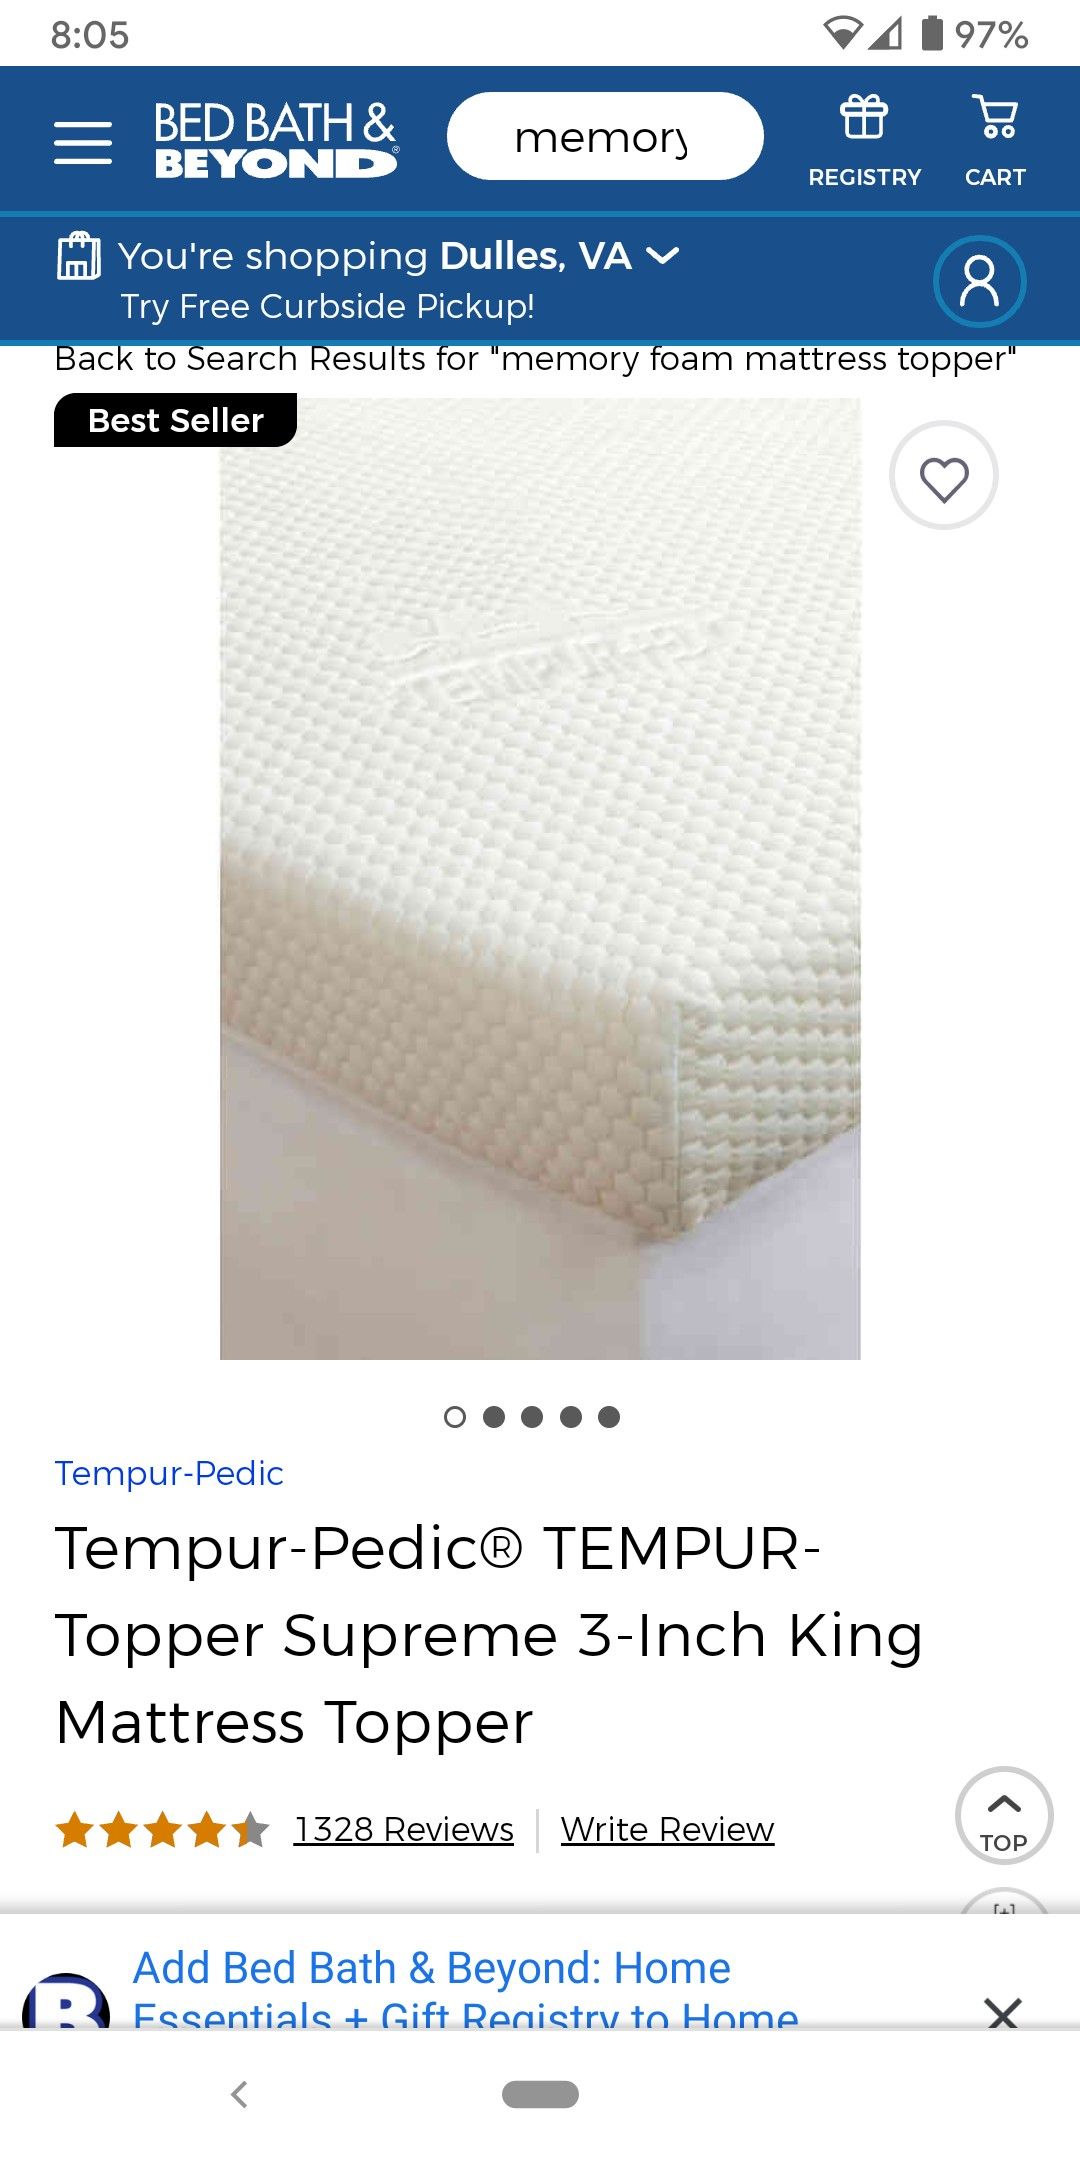 Tempur-Pedic® TEMPUR-Topper Supreme 3-Inch King Mattress Topper